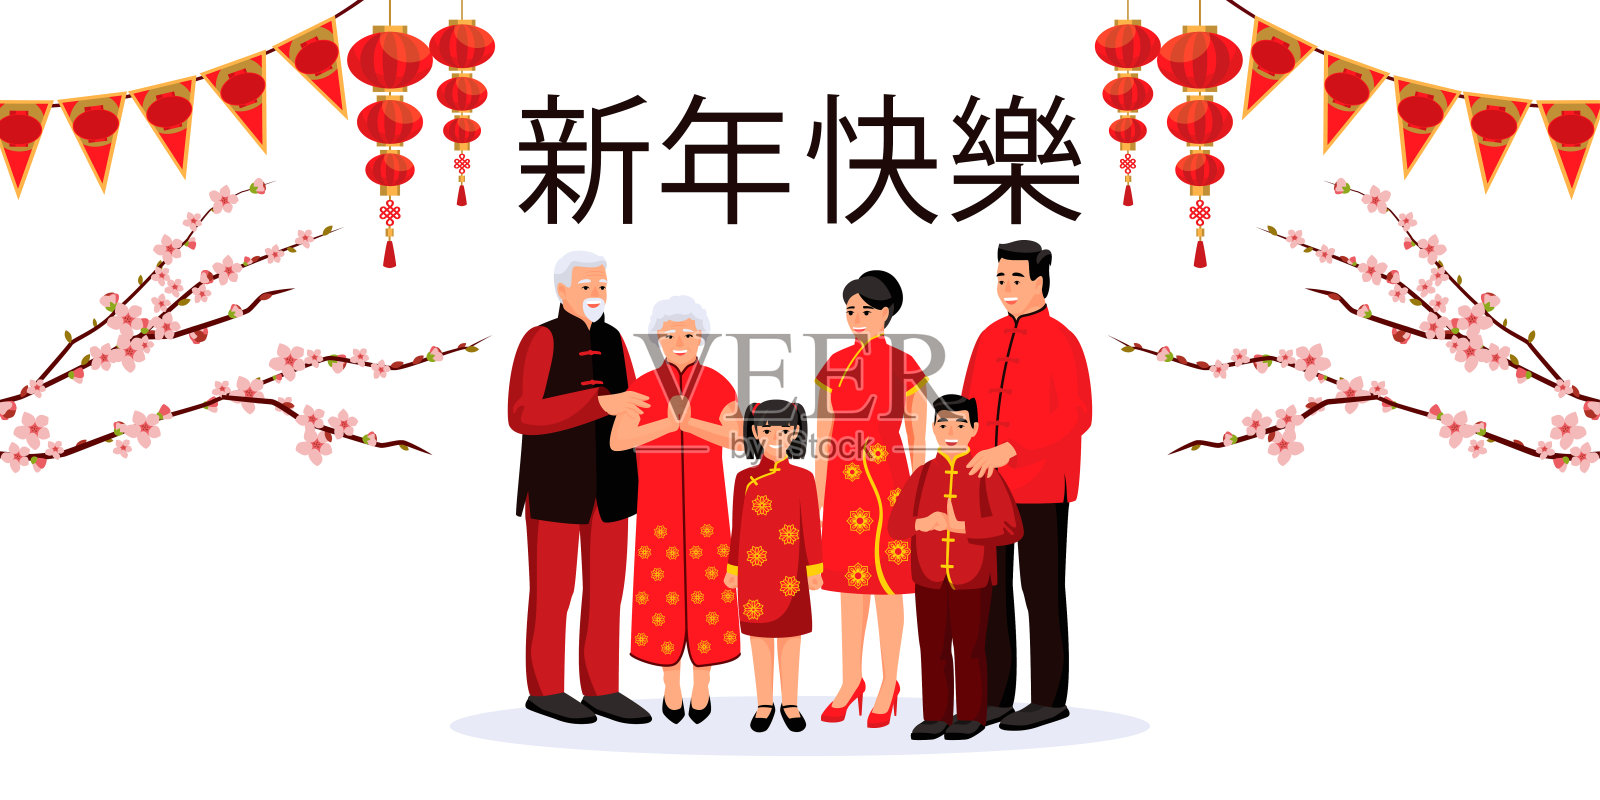 白色背景的中国家庭和节日装饰。农历新年的设计元素为横幅，海报，贺卡设计模板素材